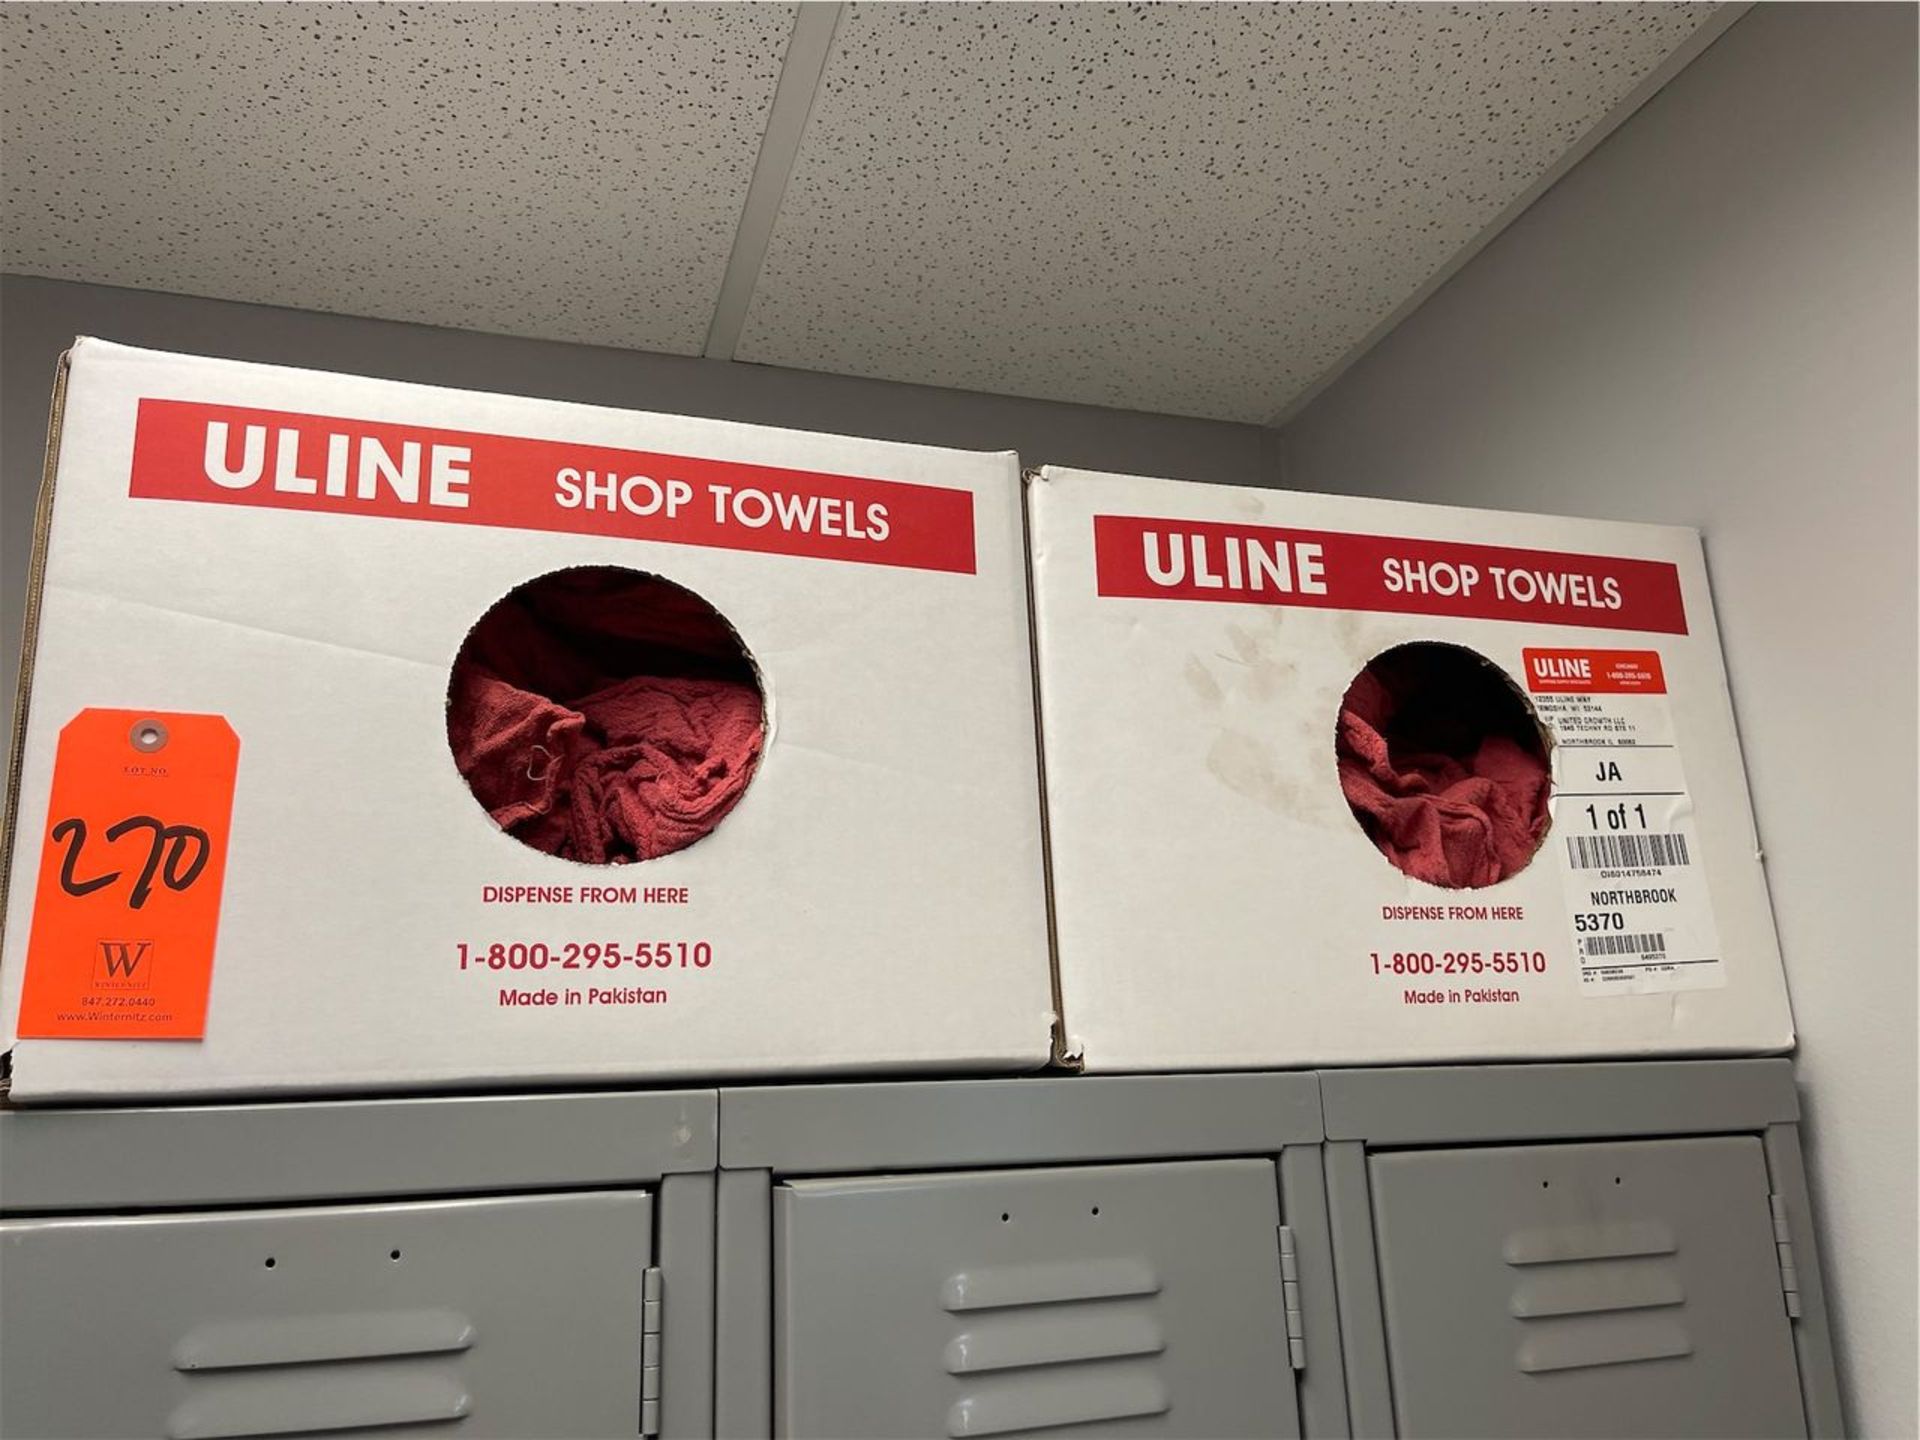 Lot - (2) Boxes of U-Line Shop Towels